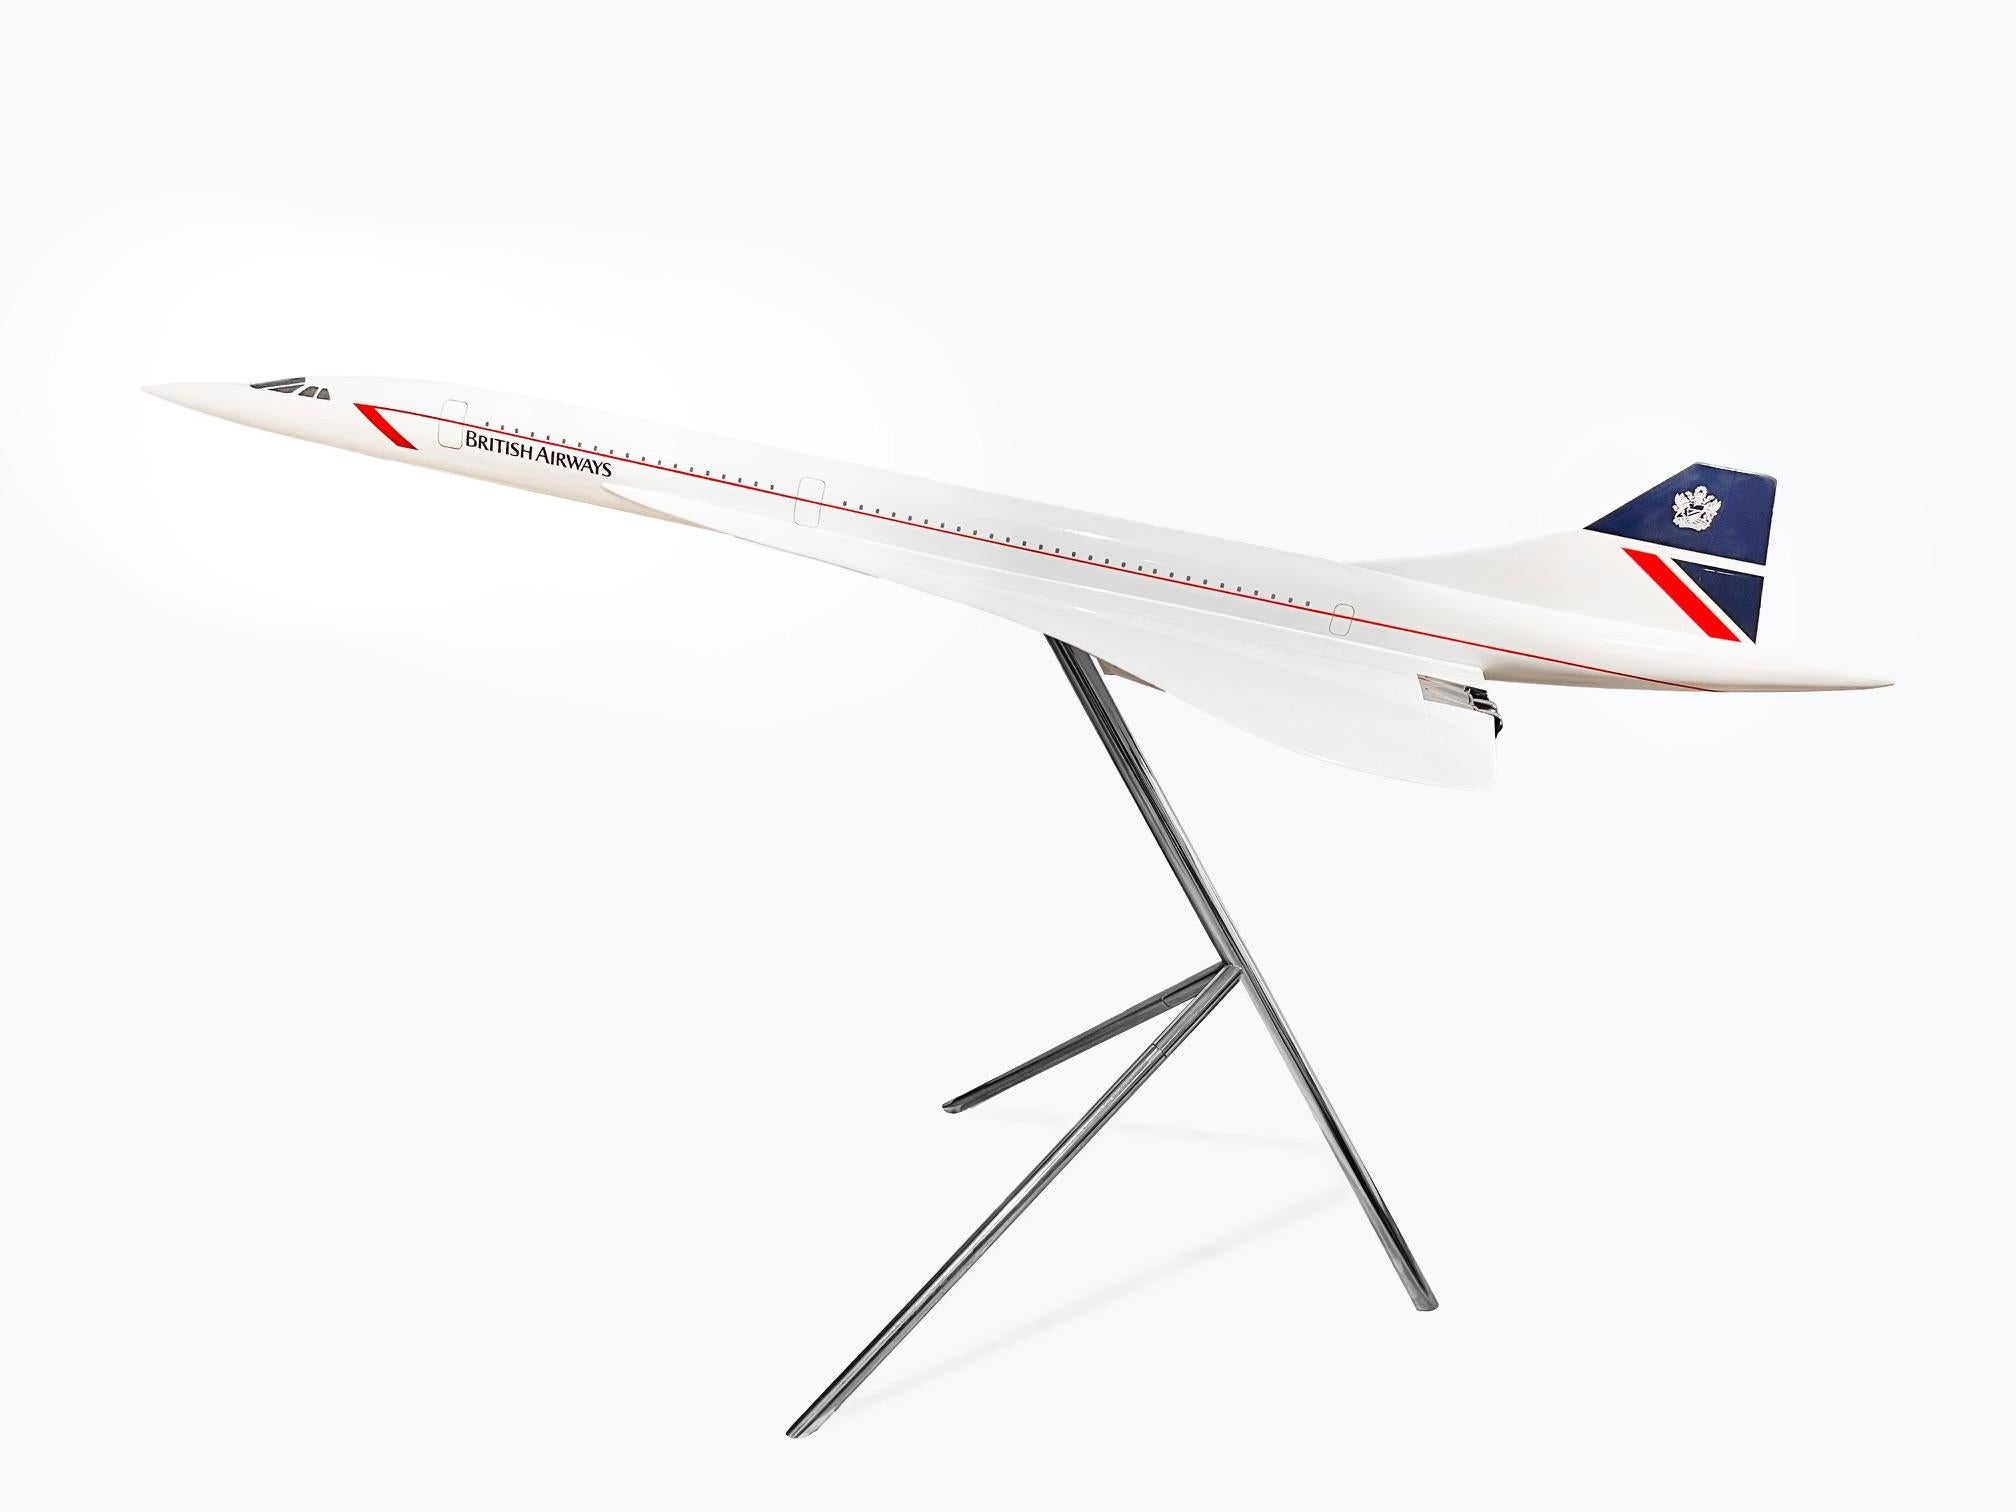 Modèle « Concorde » de British Airways à grande échelle